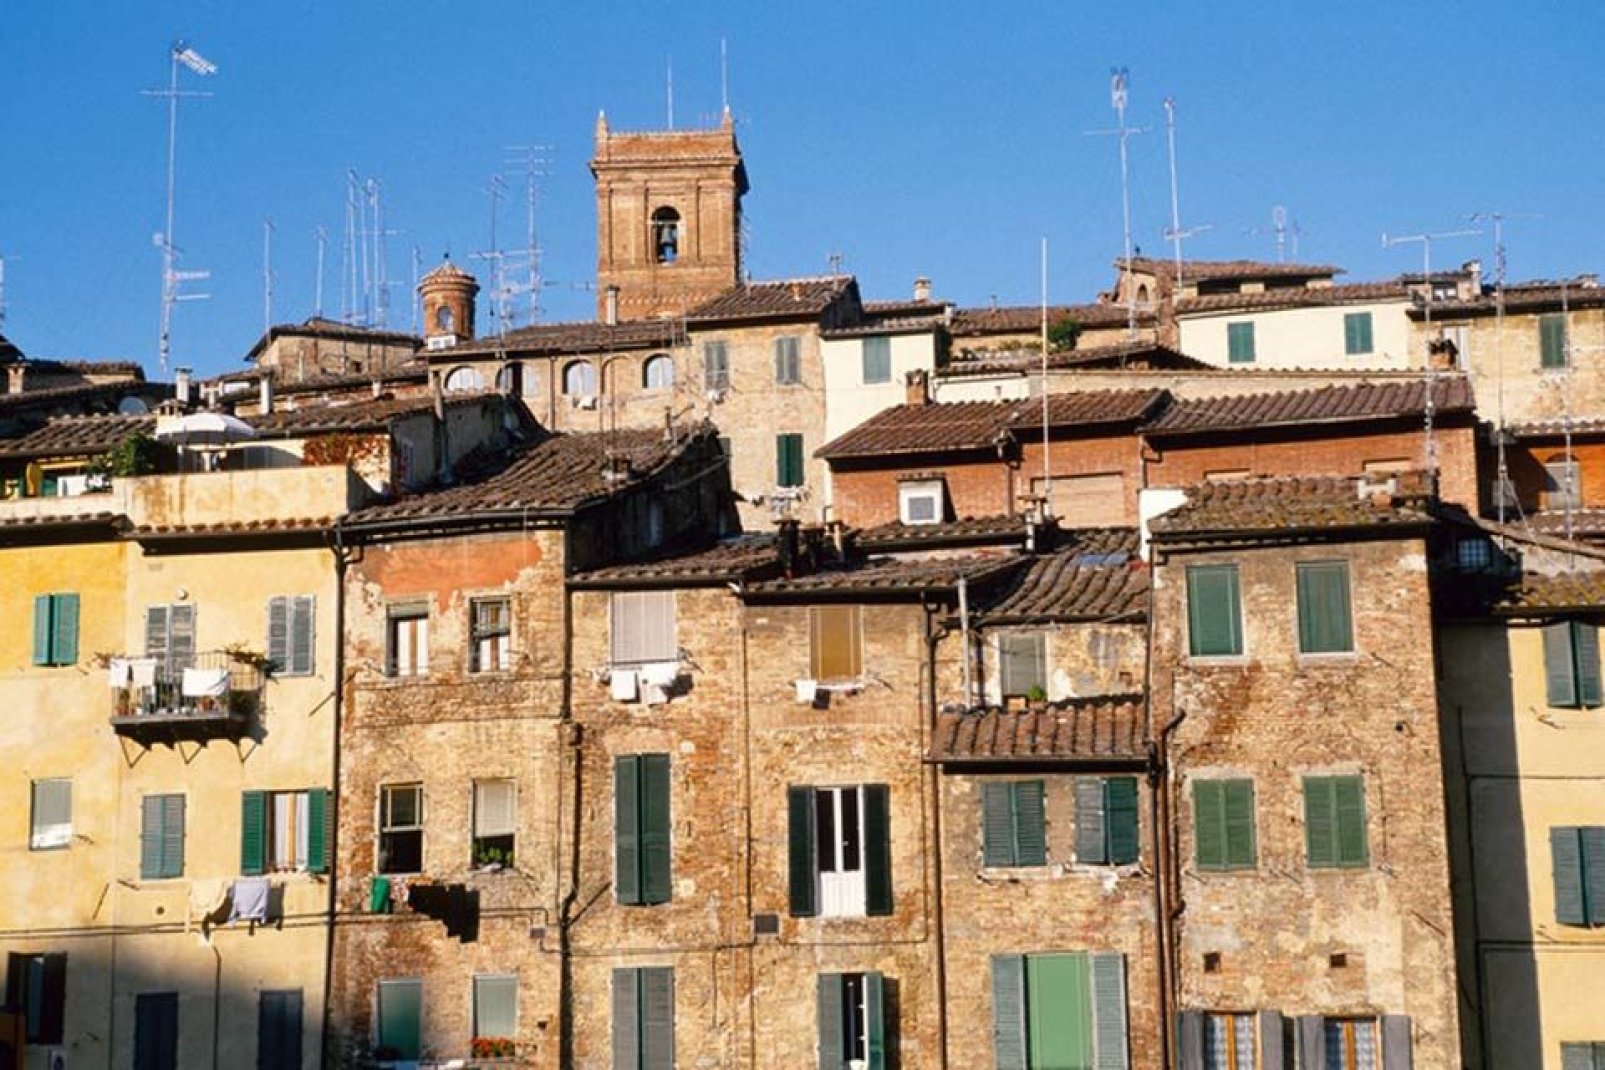 Siena ist von zahlreichen malerischen Gassen durchzogen, die von alten, hohen und erhabenen Häusern gesäumt sind.